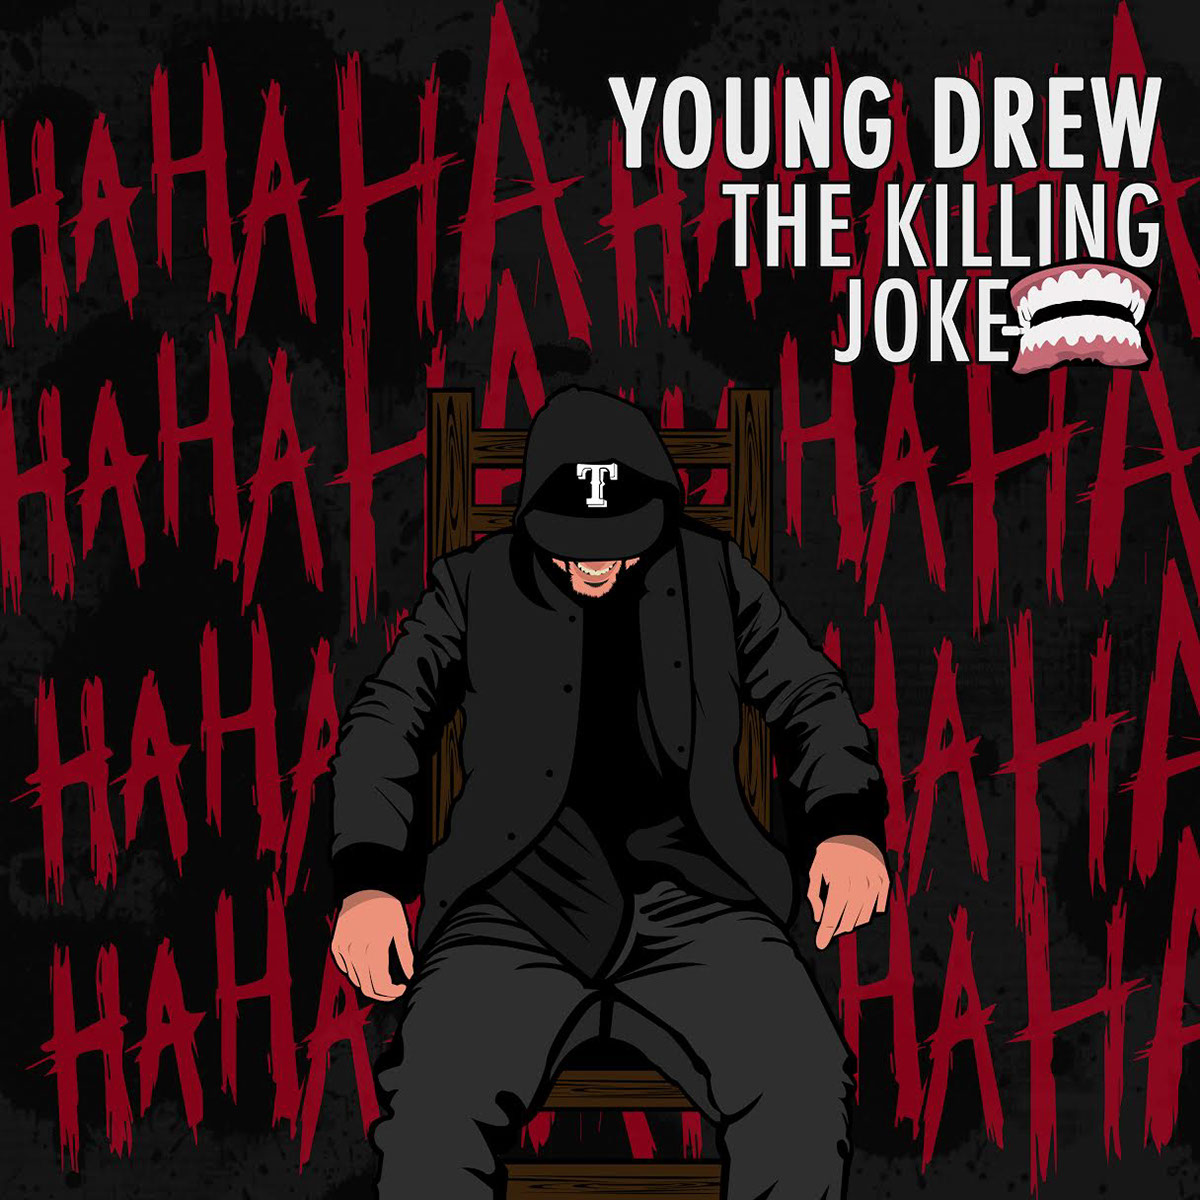 the killing joke hip hop album art Illustrator concept